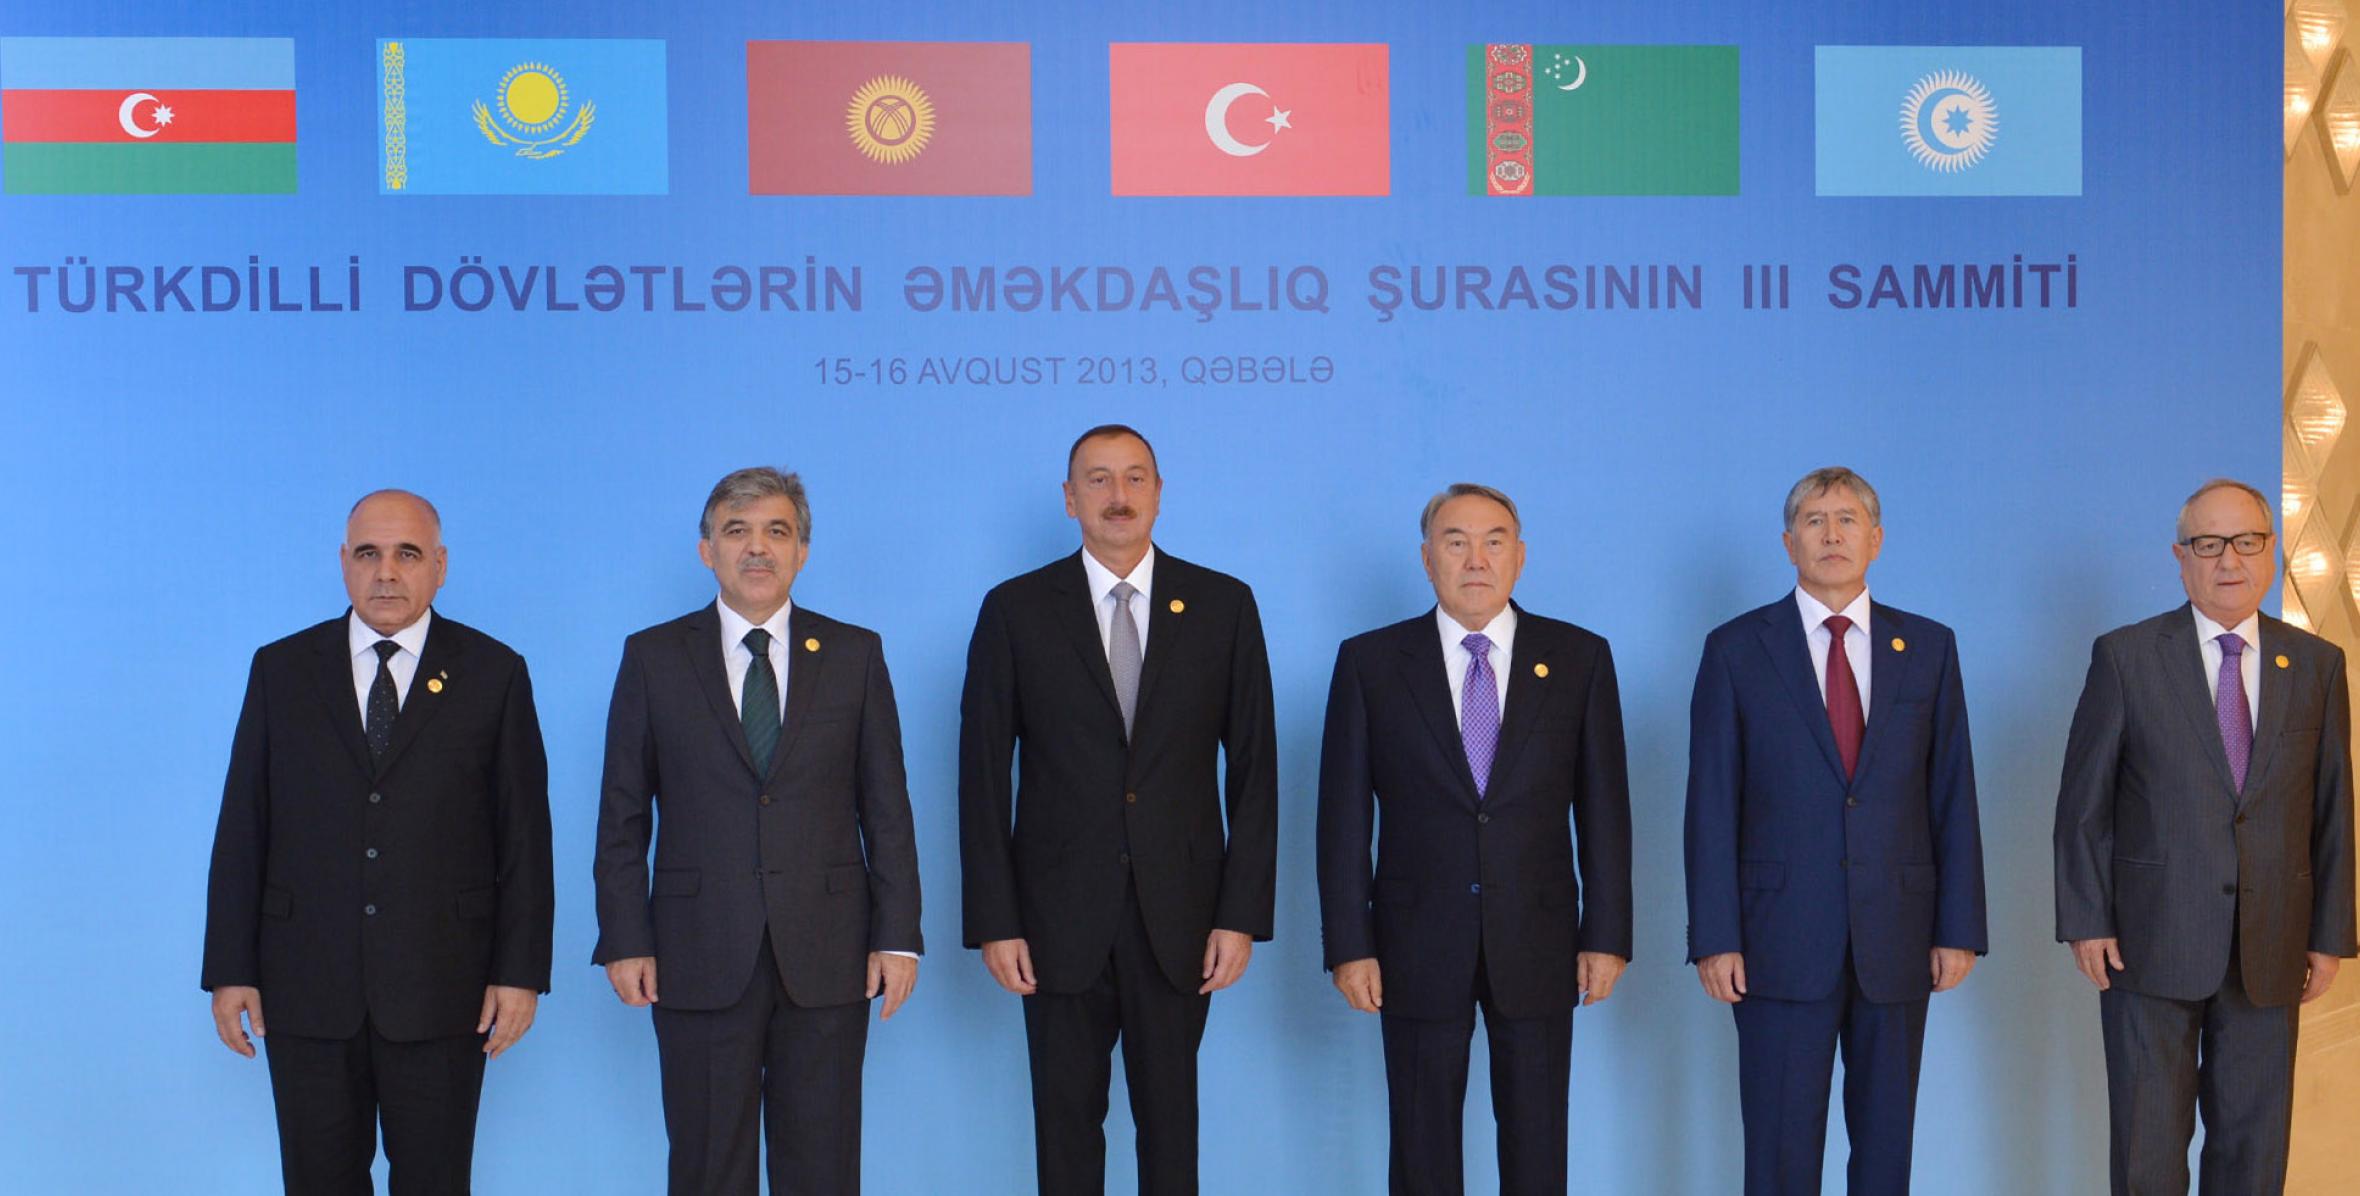 В Габале состоялся III саммит Совета сотрудничества тюркоязычных государств